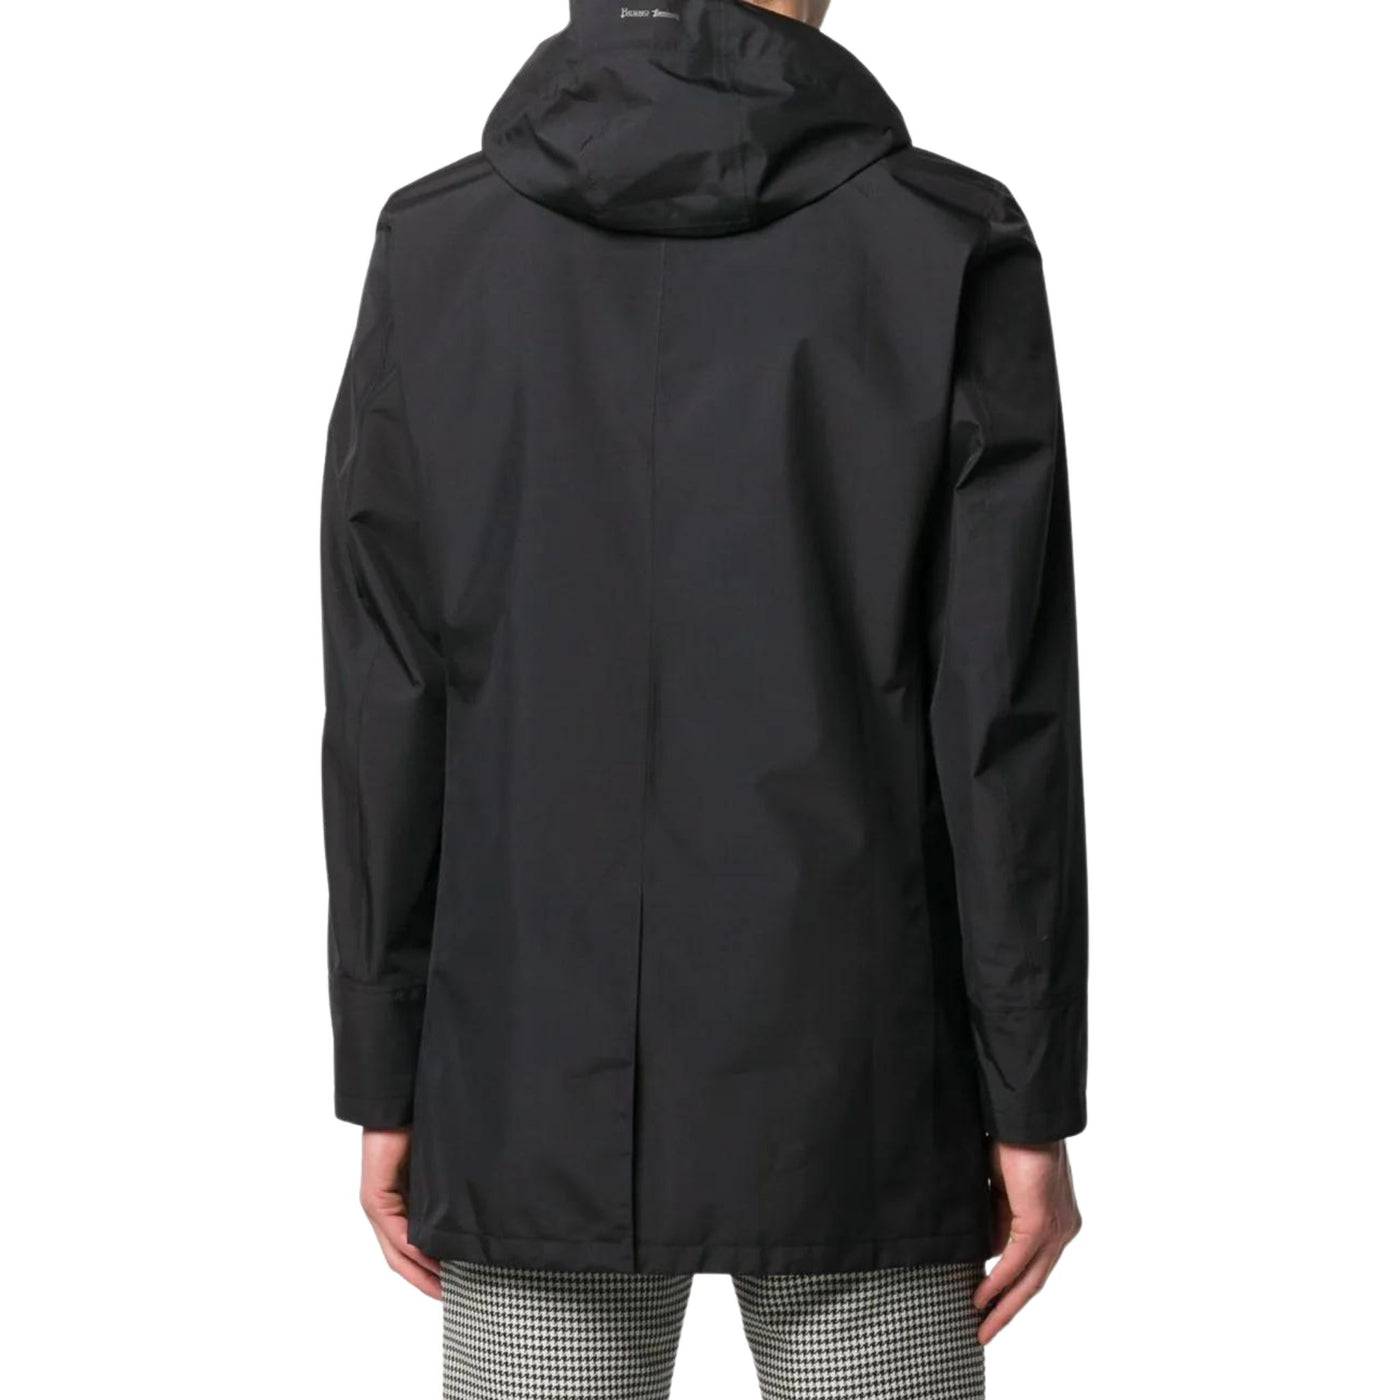 Men's raincoat with hood and zip